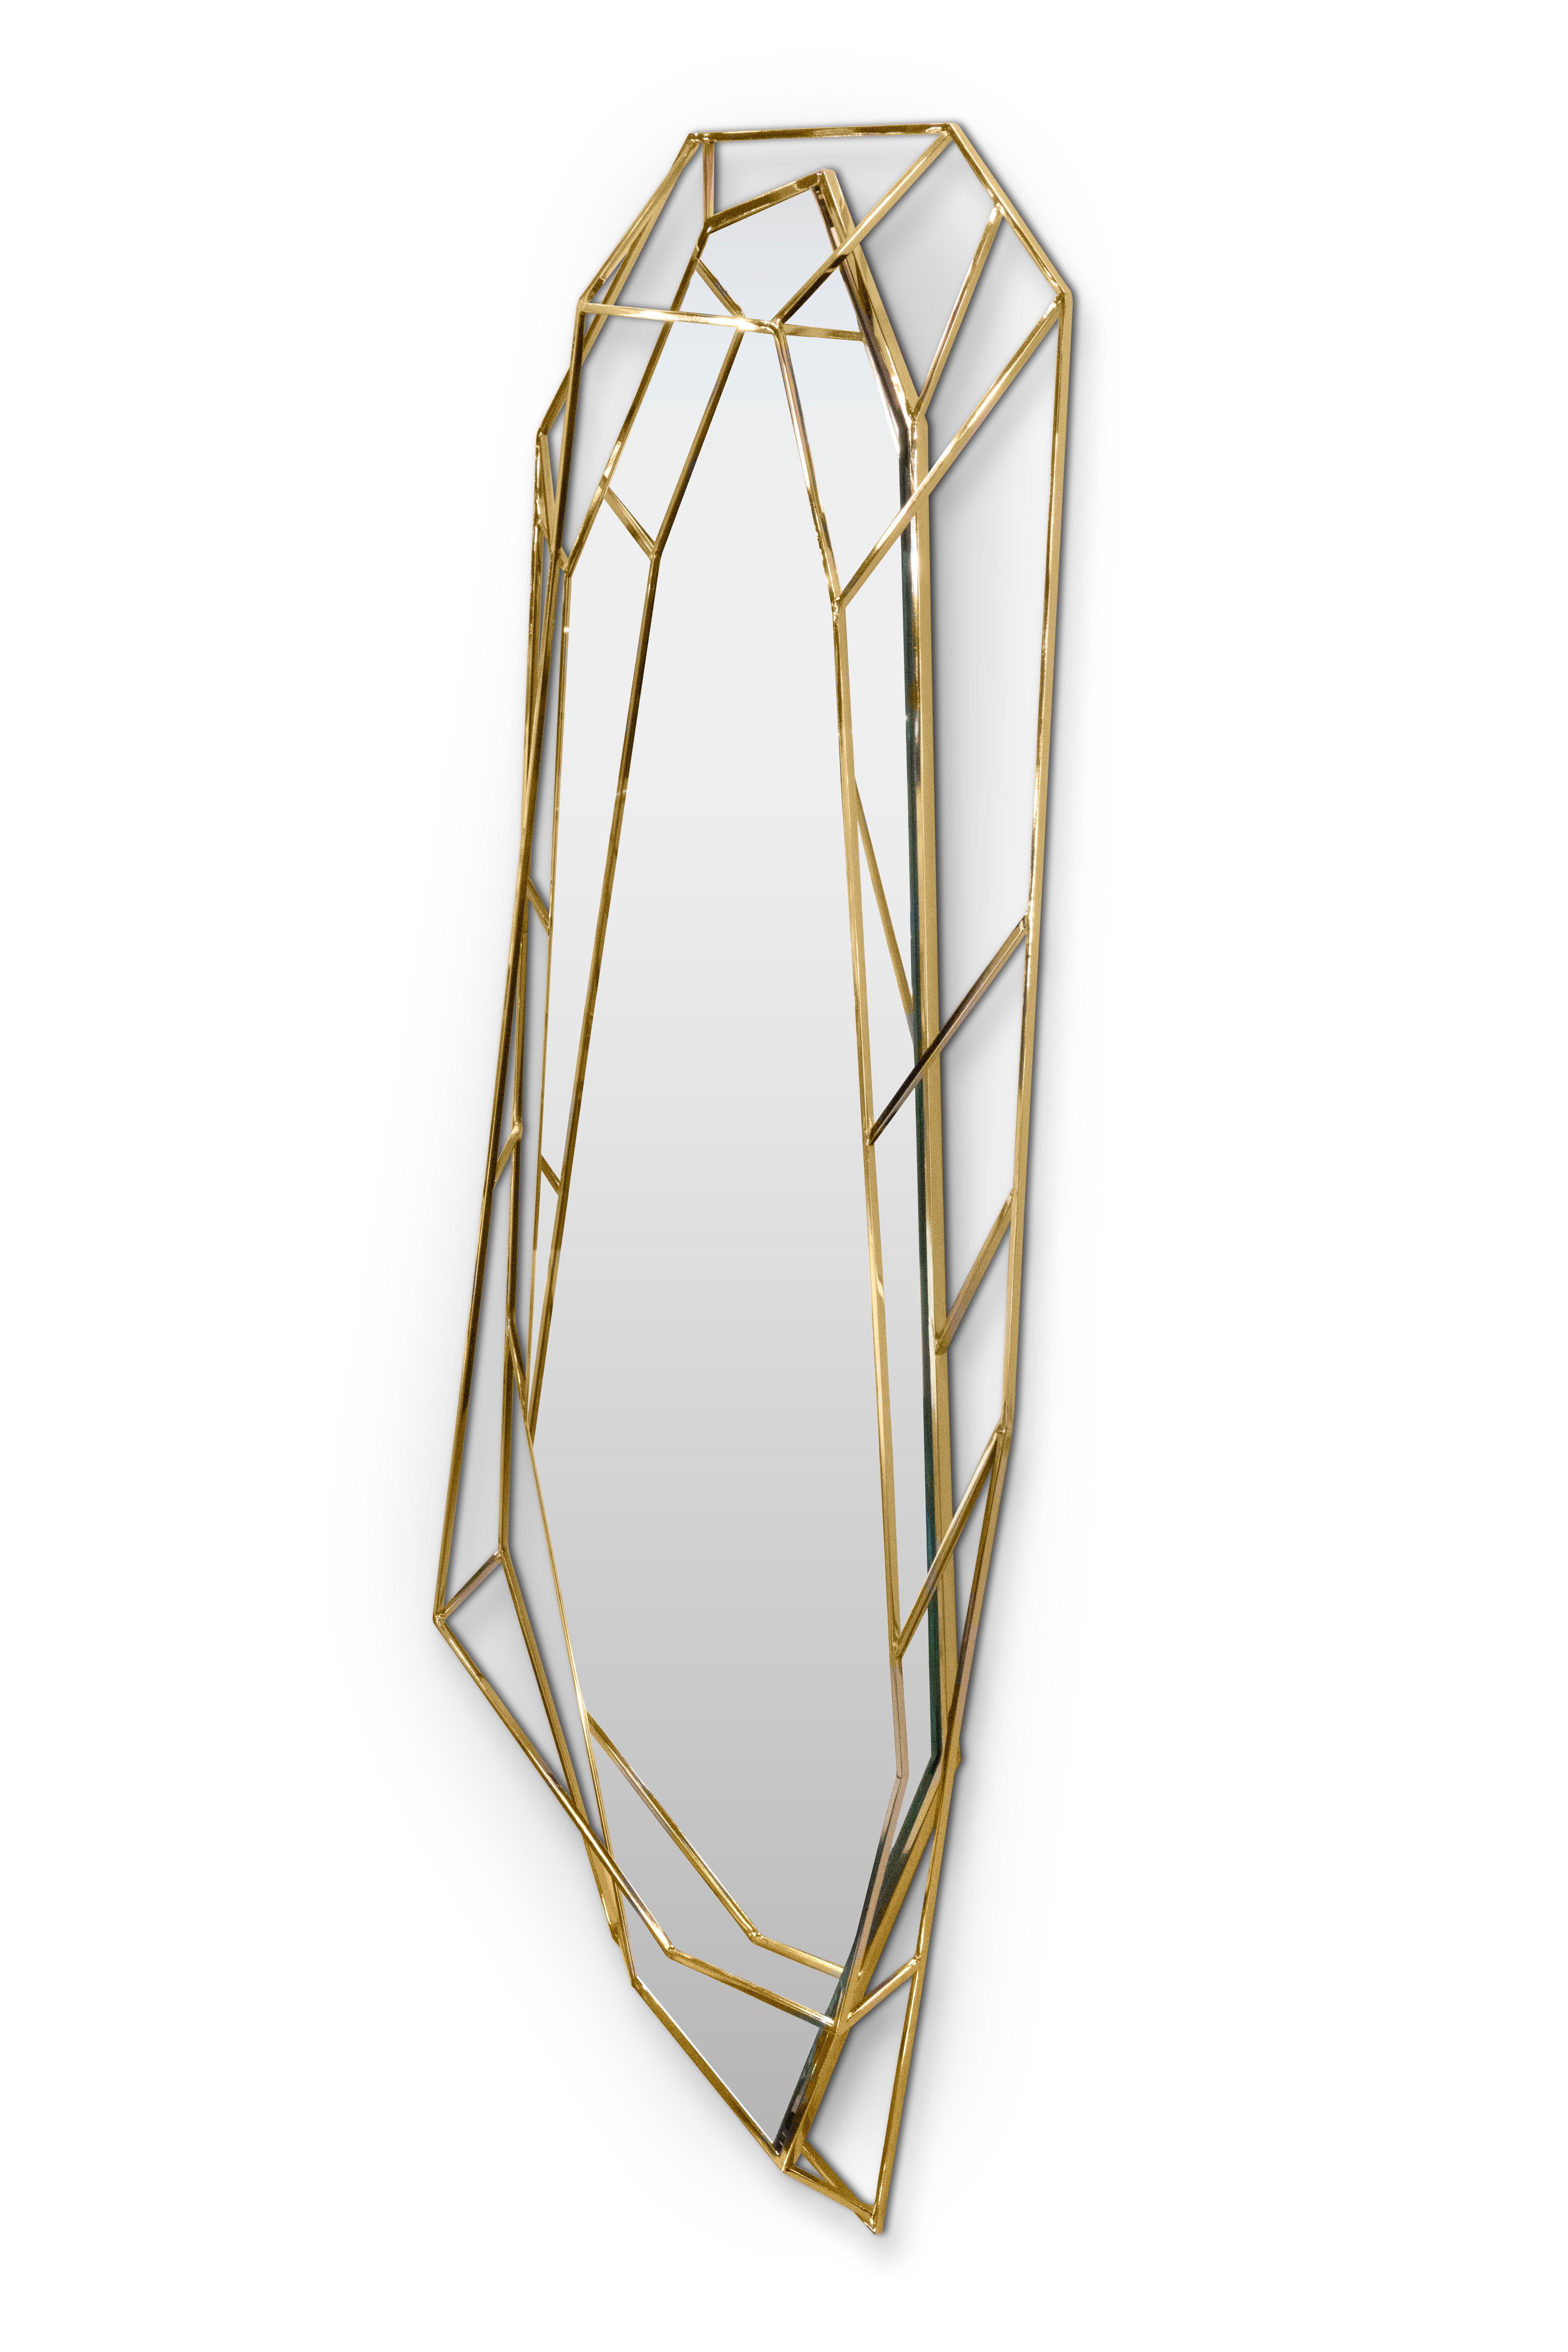 Inspiriert von den asymmetrischen und schillernden Formen eines Diamanten, ist dieser Spiegel die ultimative Kombination aus Geometrie und Design. Die Verwendung von Gold unterstreicht das luxuriöse Element dieses Objekts und macht es zu einem